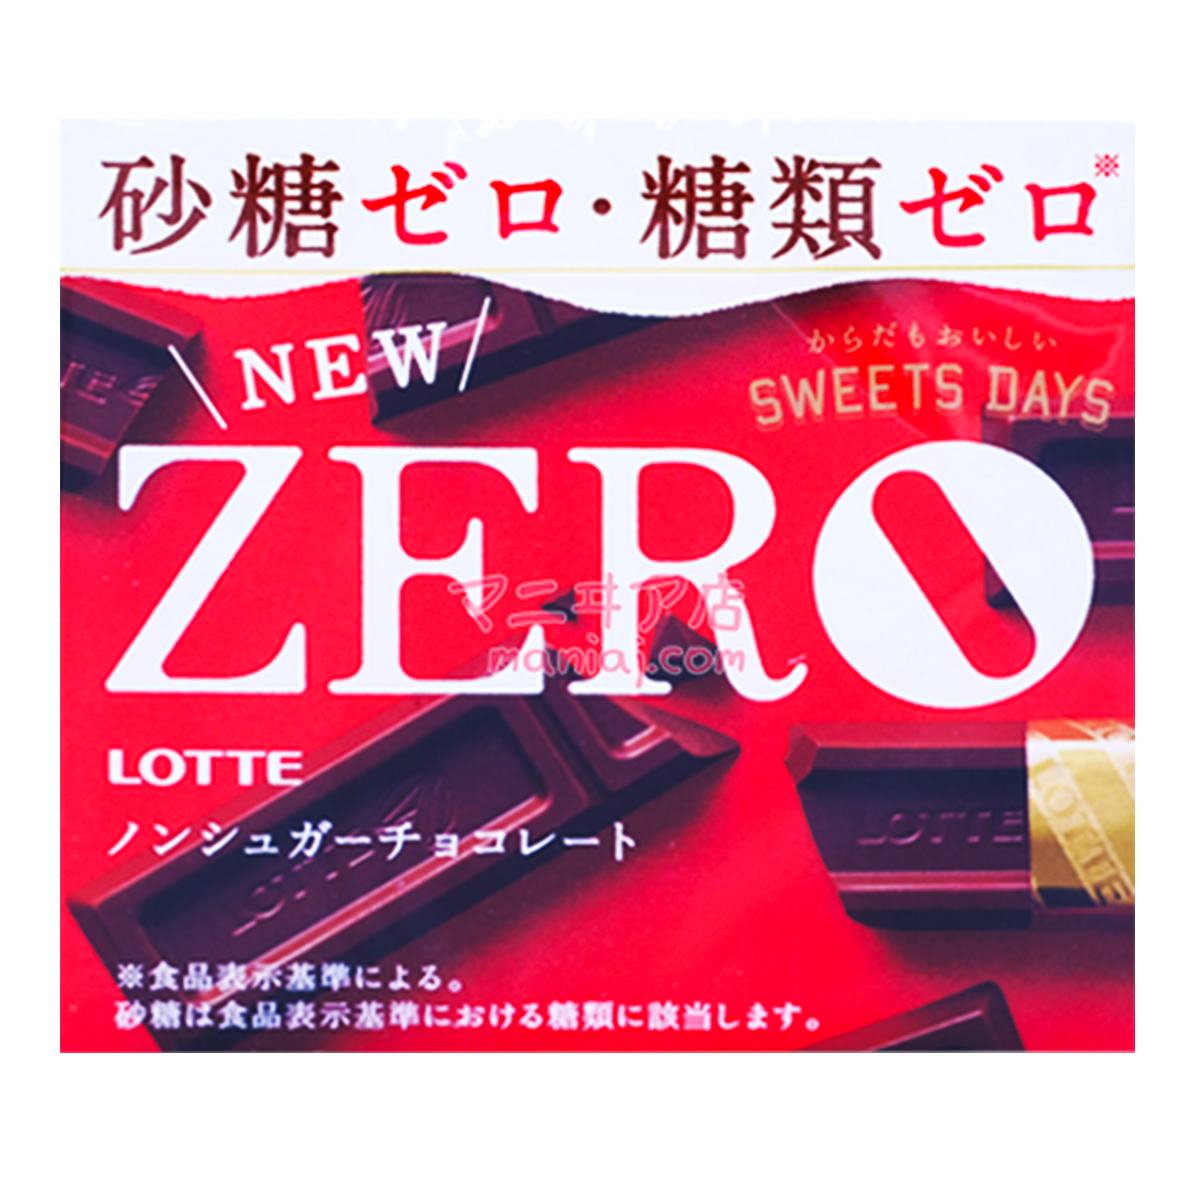 Zero Sugar Free Chocolate